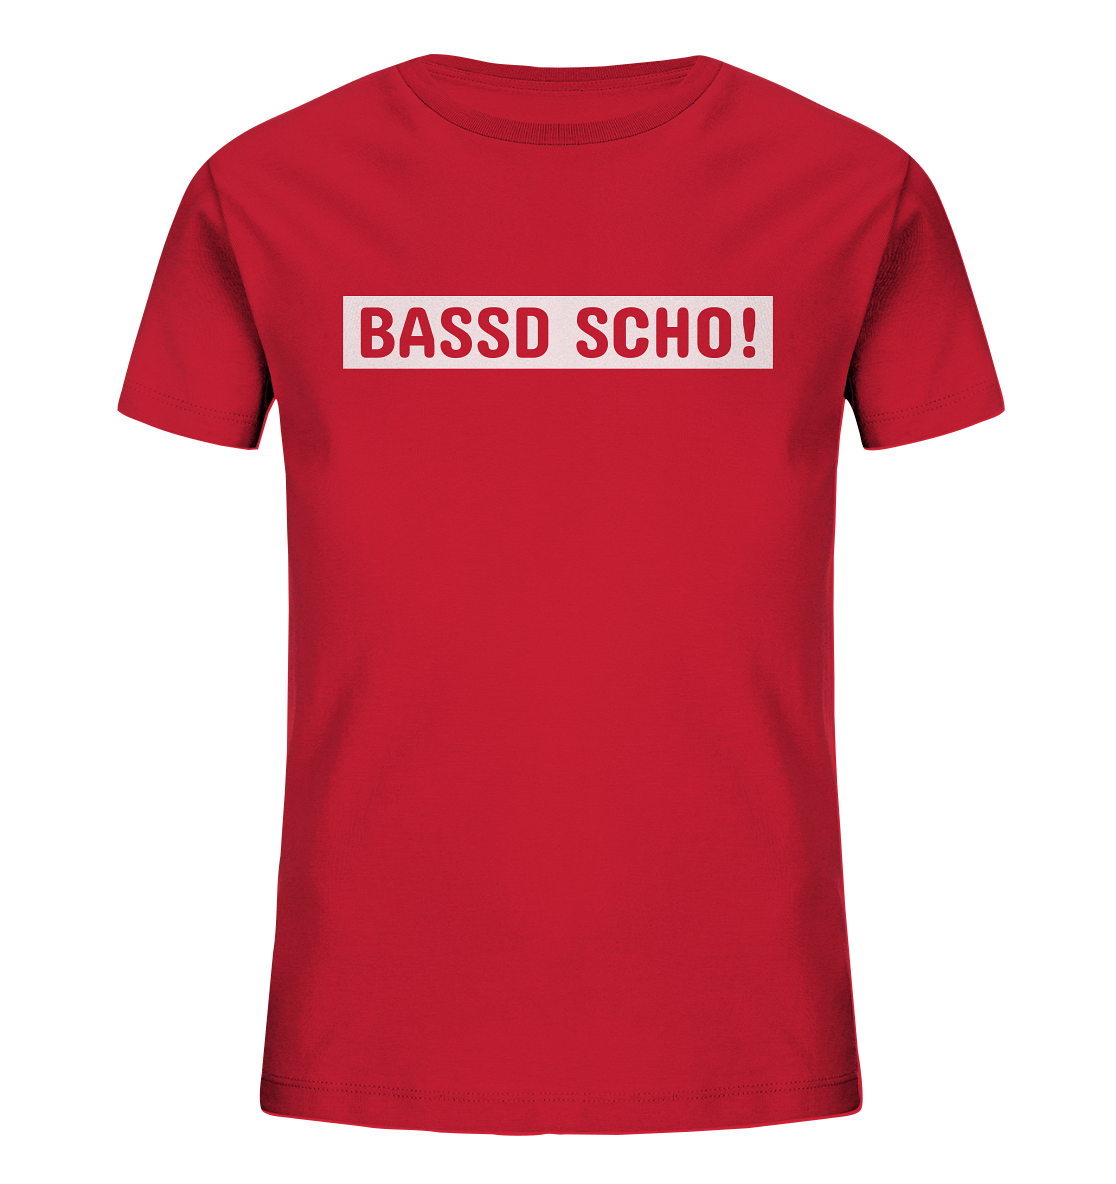 #BASSDSCHO! - Kids Organic Shirt